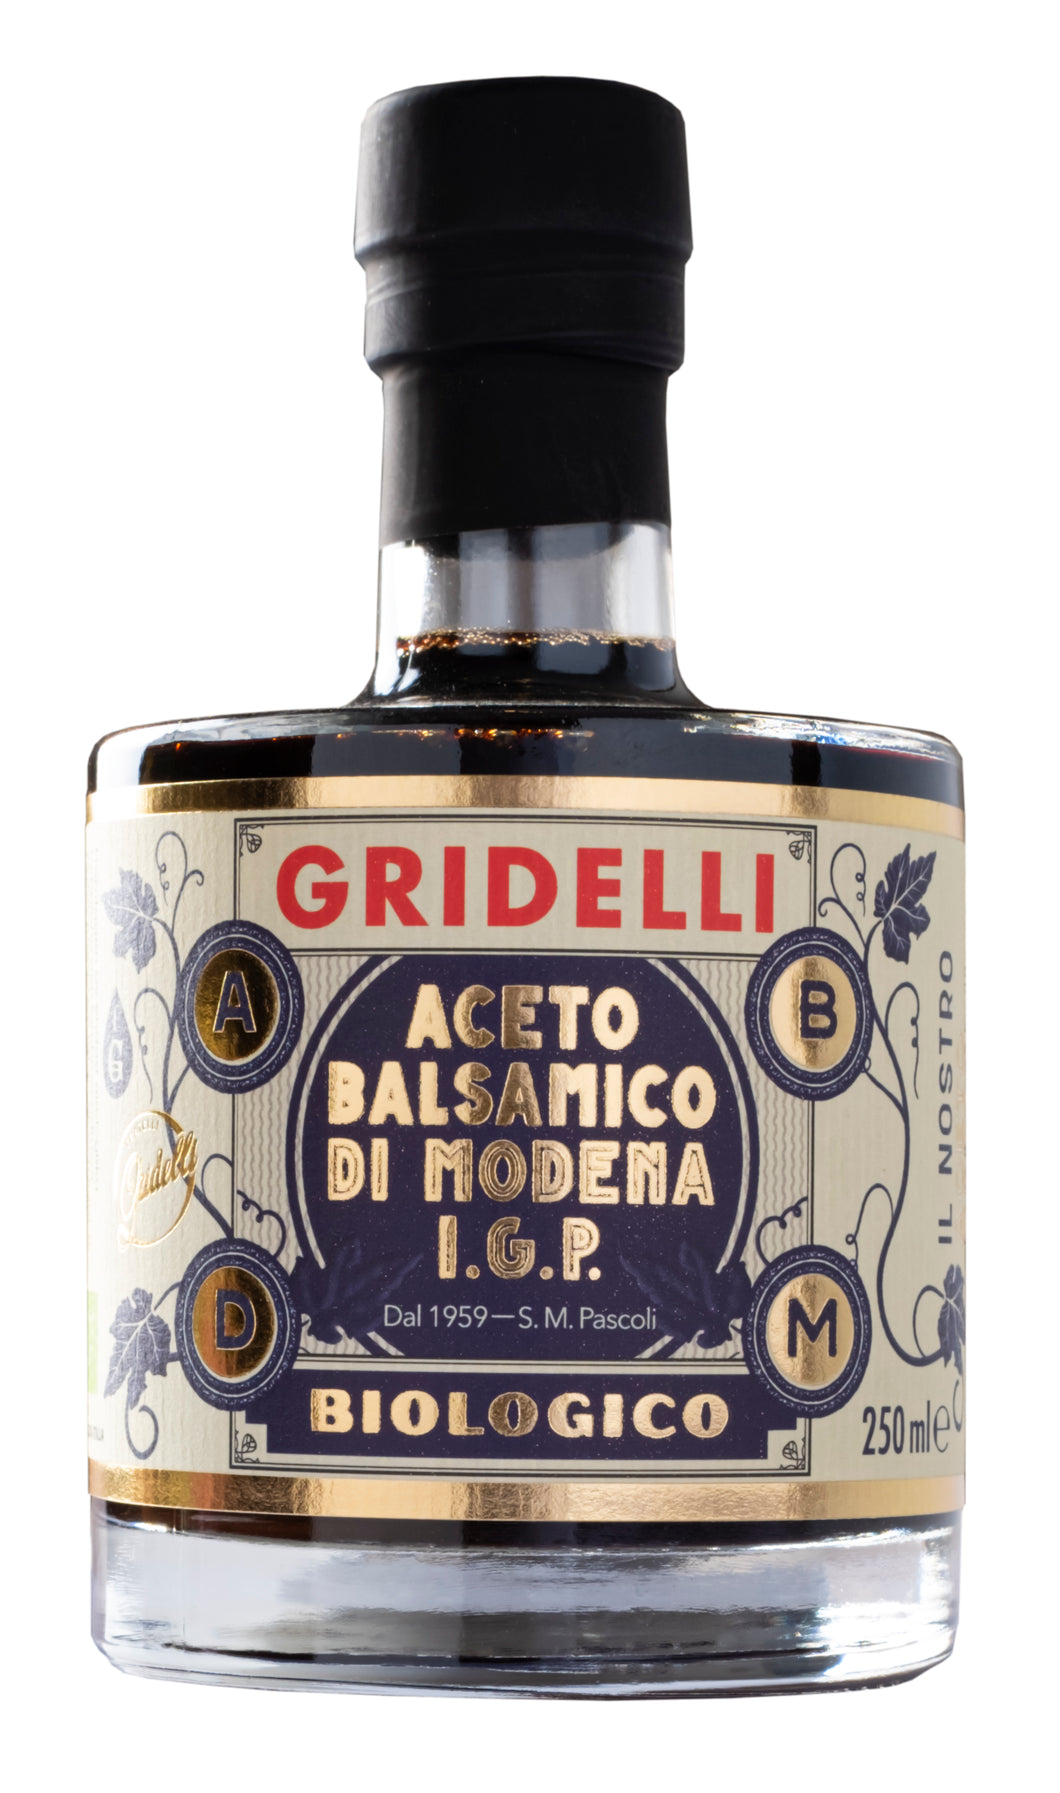 Gridelli's Aceto Balsamico nero